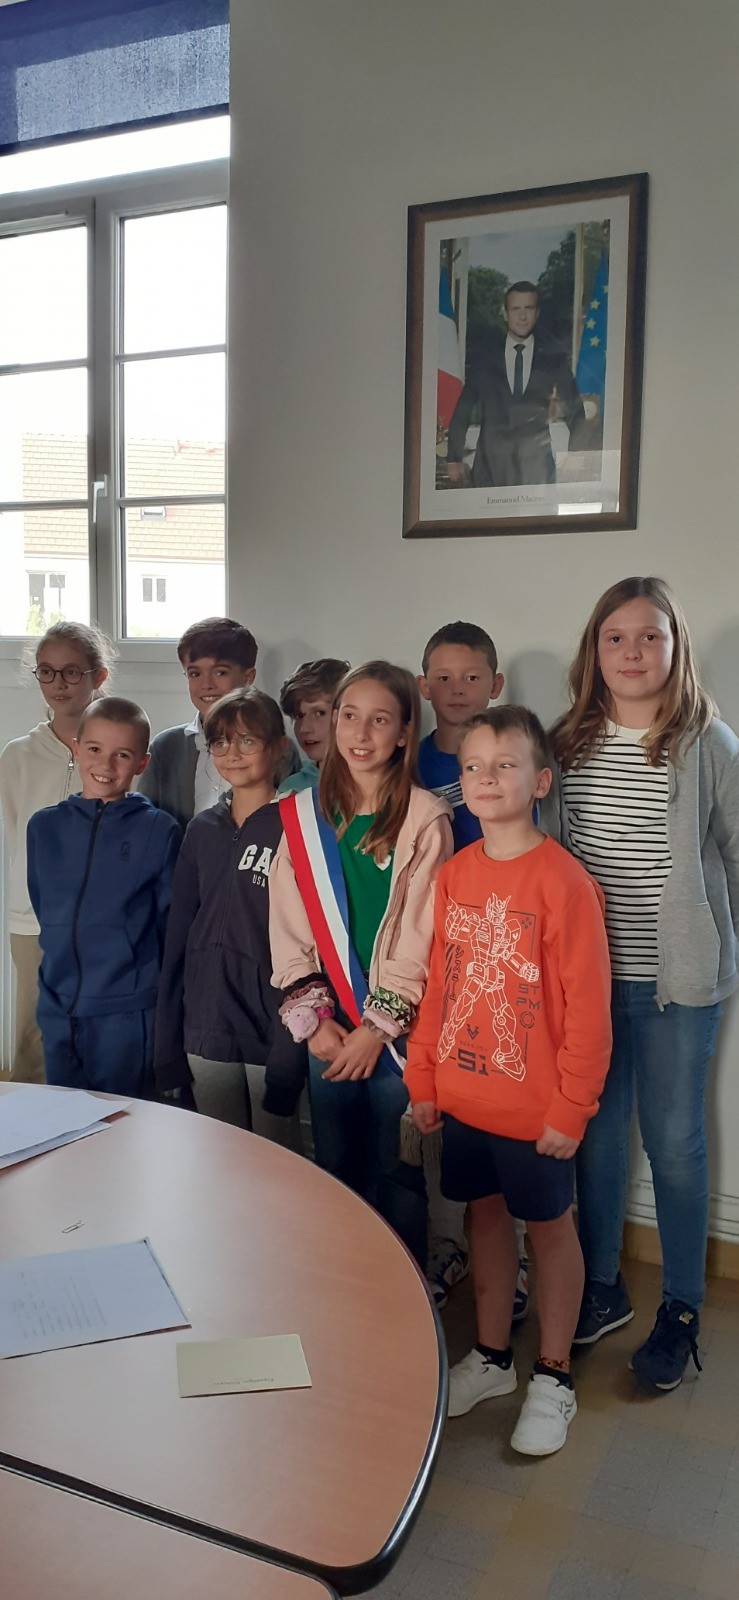 Conseil municipal des enfants de VAL d'ARRY après la désignation du nouveau maire